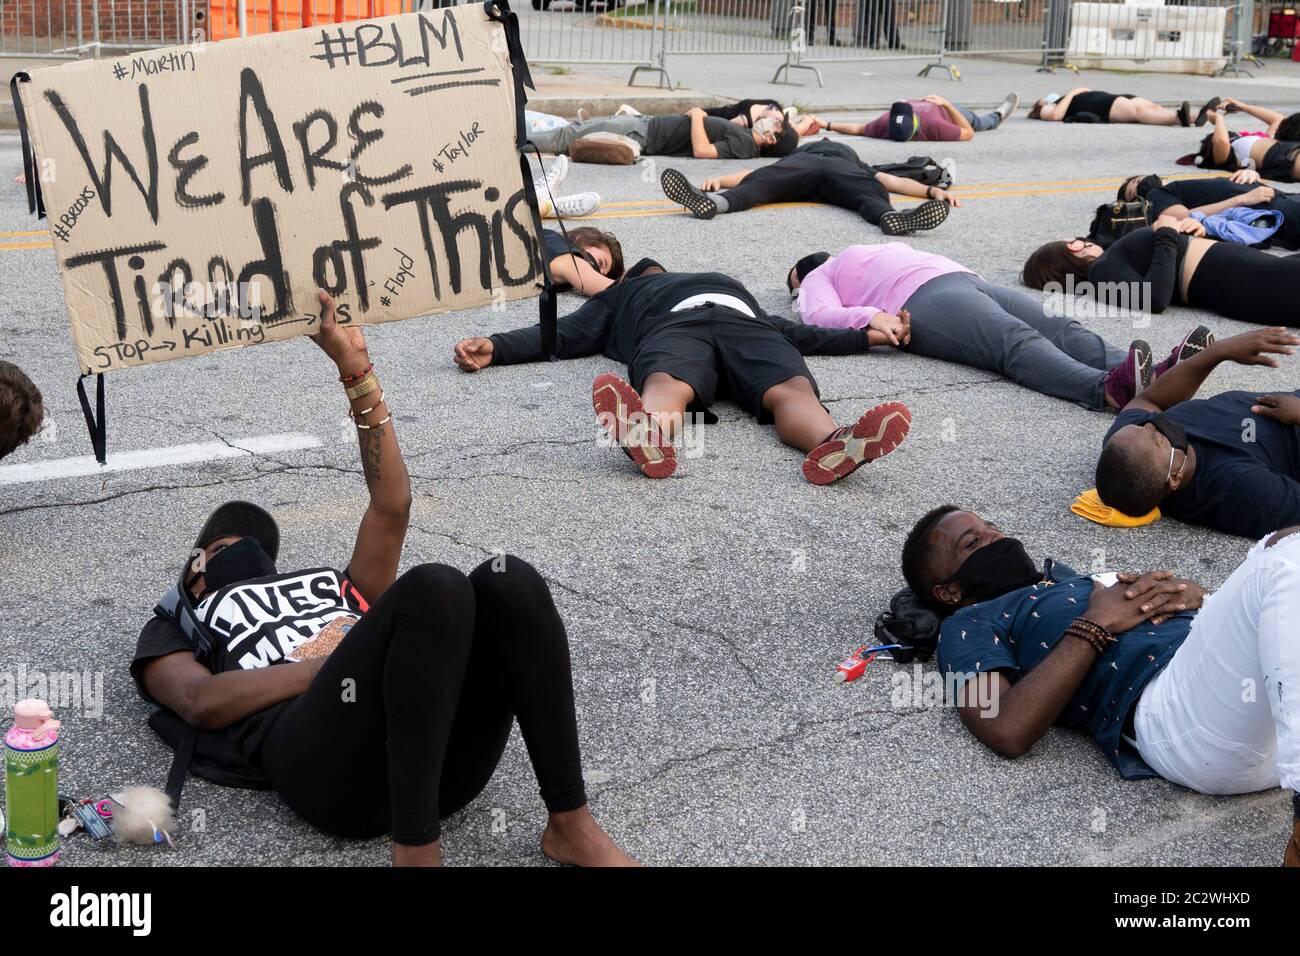 Atlanta, Stati Uniti. 17 Giugno 2020. Il protesore tiene un cartello al di fuori del quartier generale della polizia ad Atlanta, USA, che legge: "Siamo stanchi di questo", riferendosi alle ingiustizie contro i neri da parte della polizia. Credit: Michah casella/Alamy Live News. Foto Stock